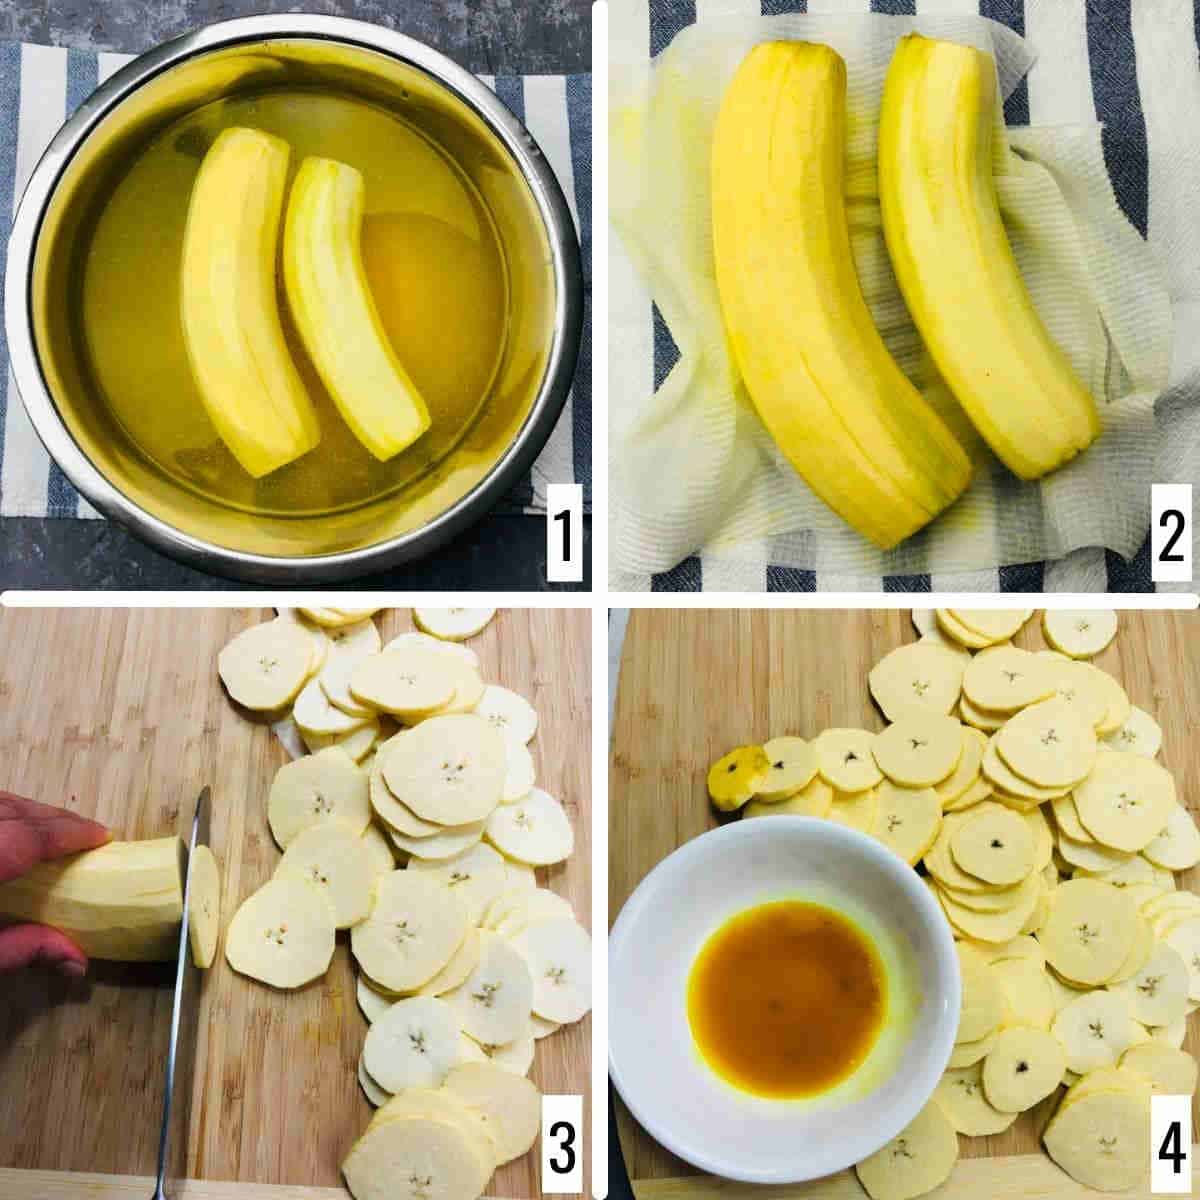 cut the raw banana.